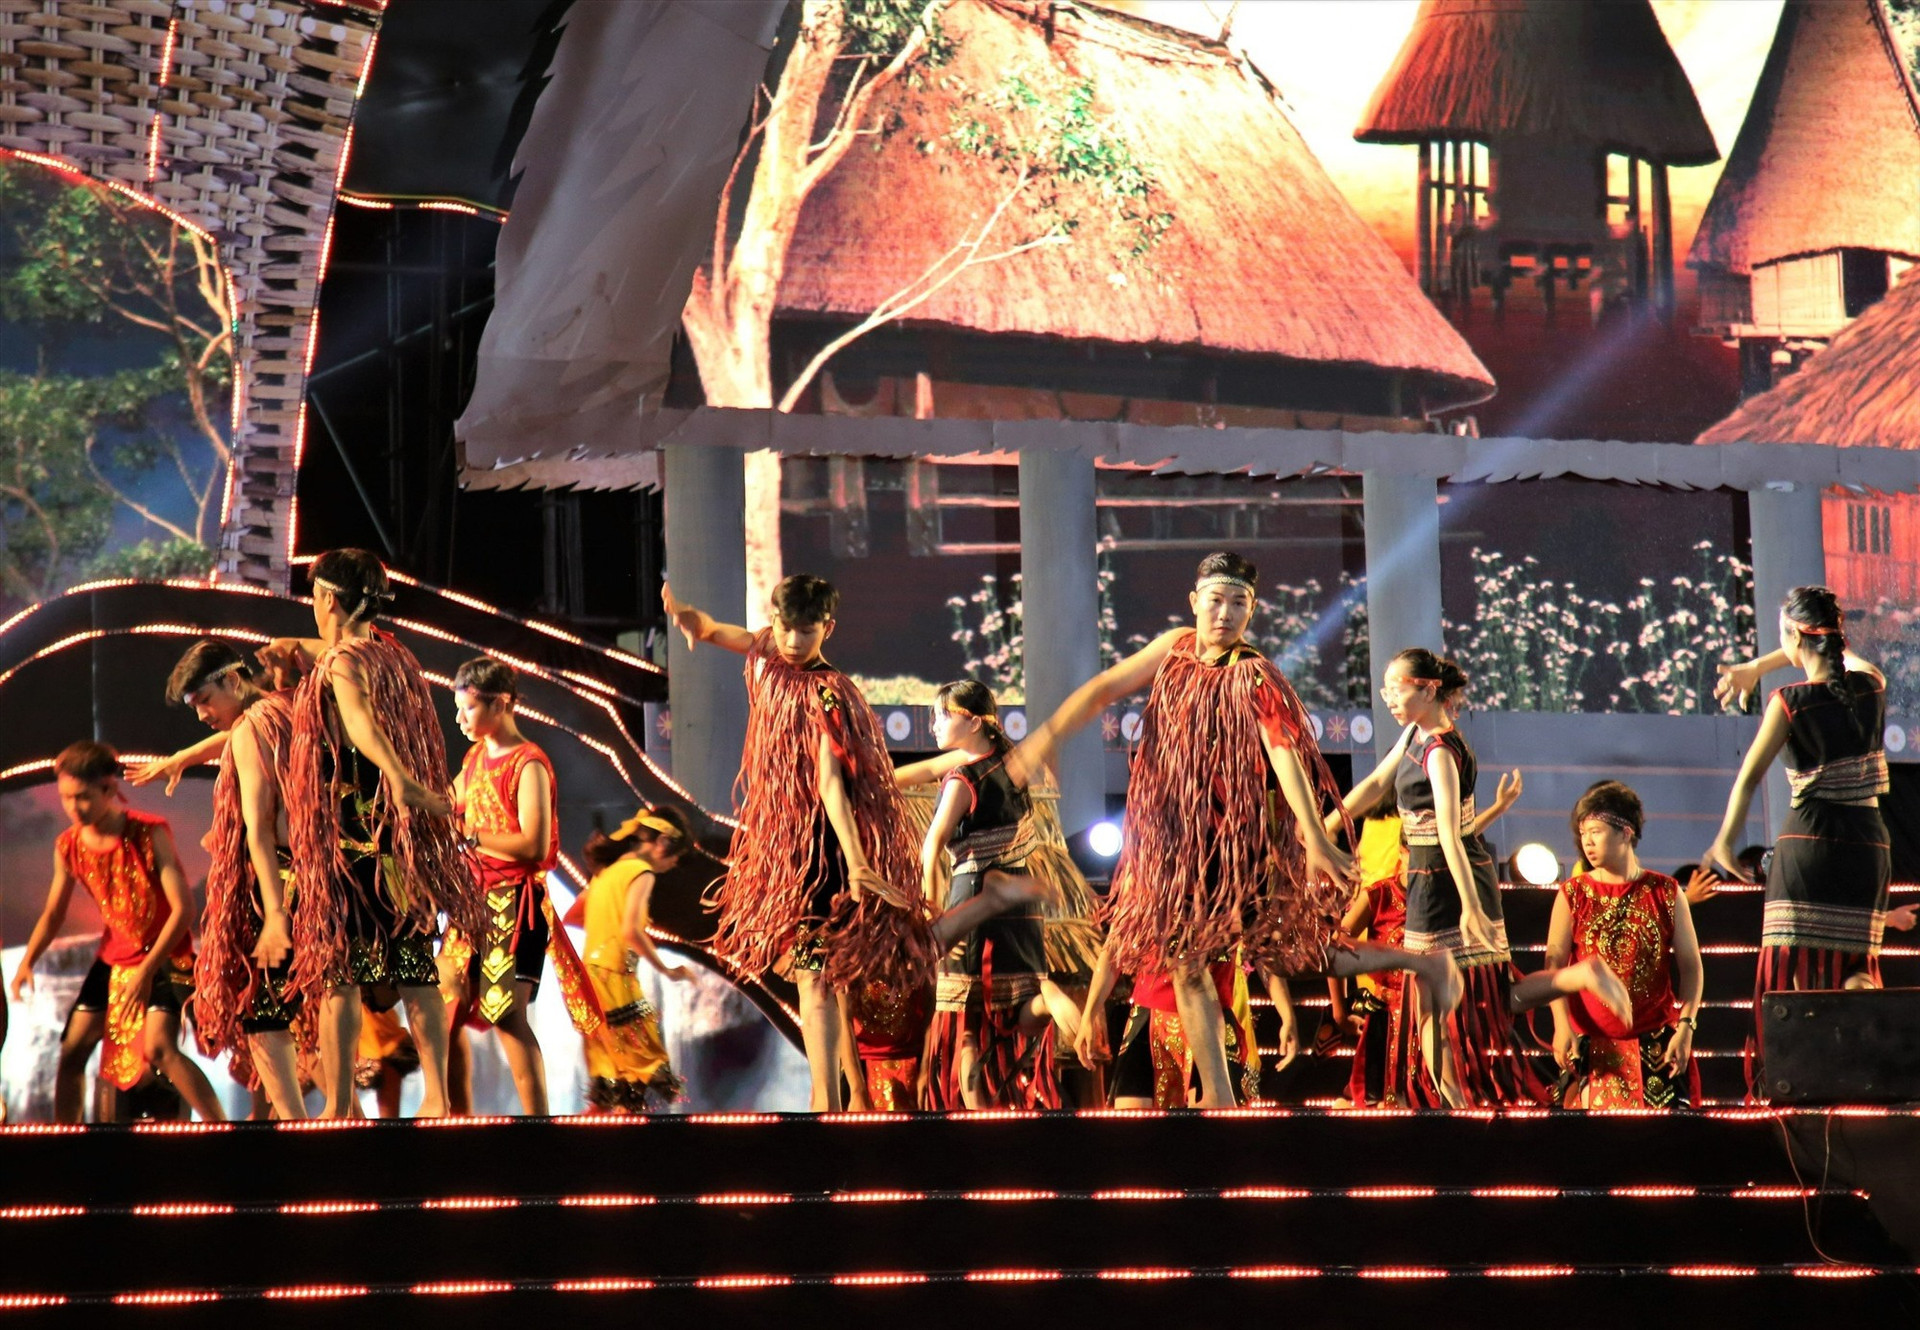 Hình ảnh cách điệu của áo vỏ cây truyền thống của đồng bào thiểu số ở Quảng Nam hiện diện trong tiết mục trình diễn. Ảnh: H.Đ.G